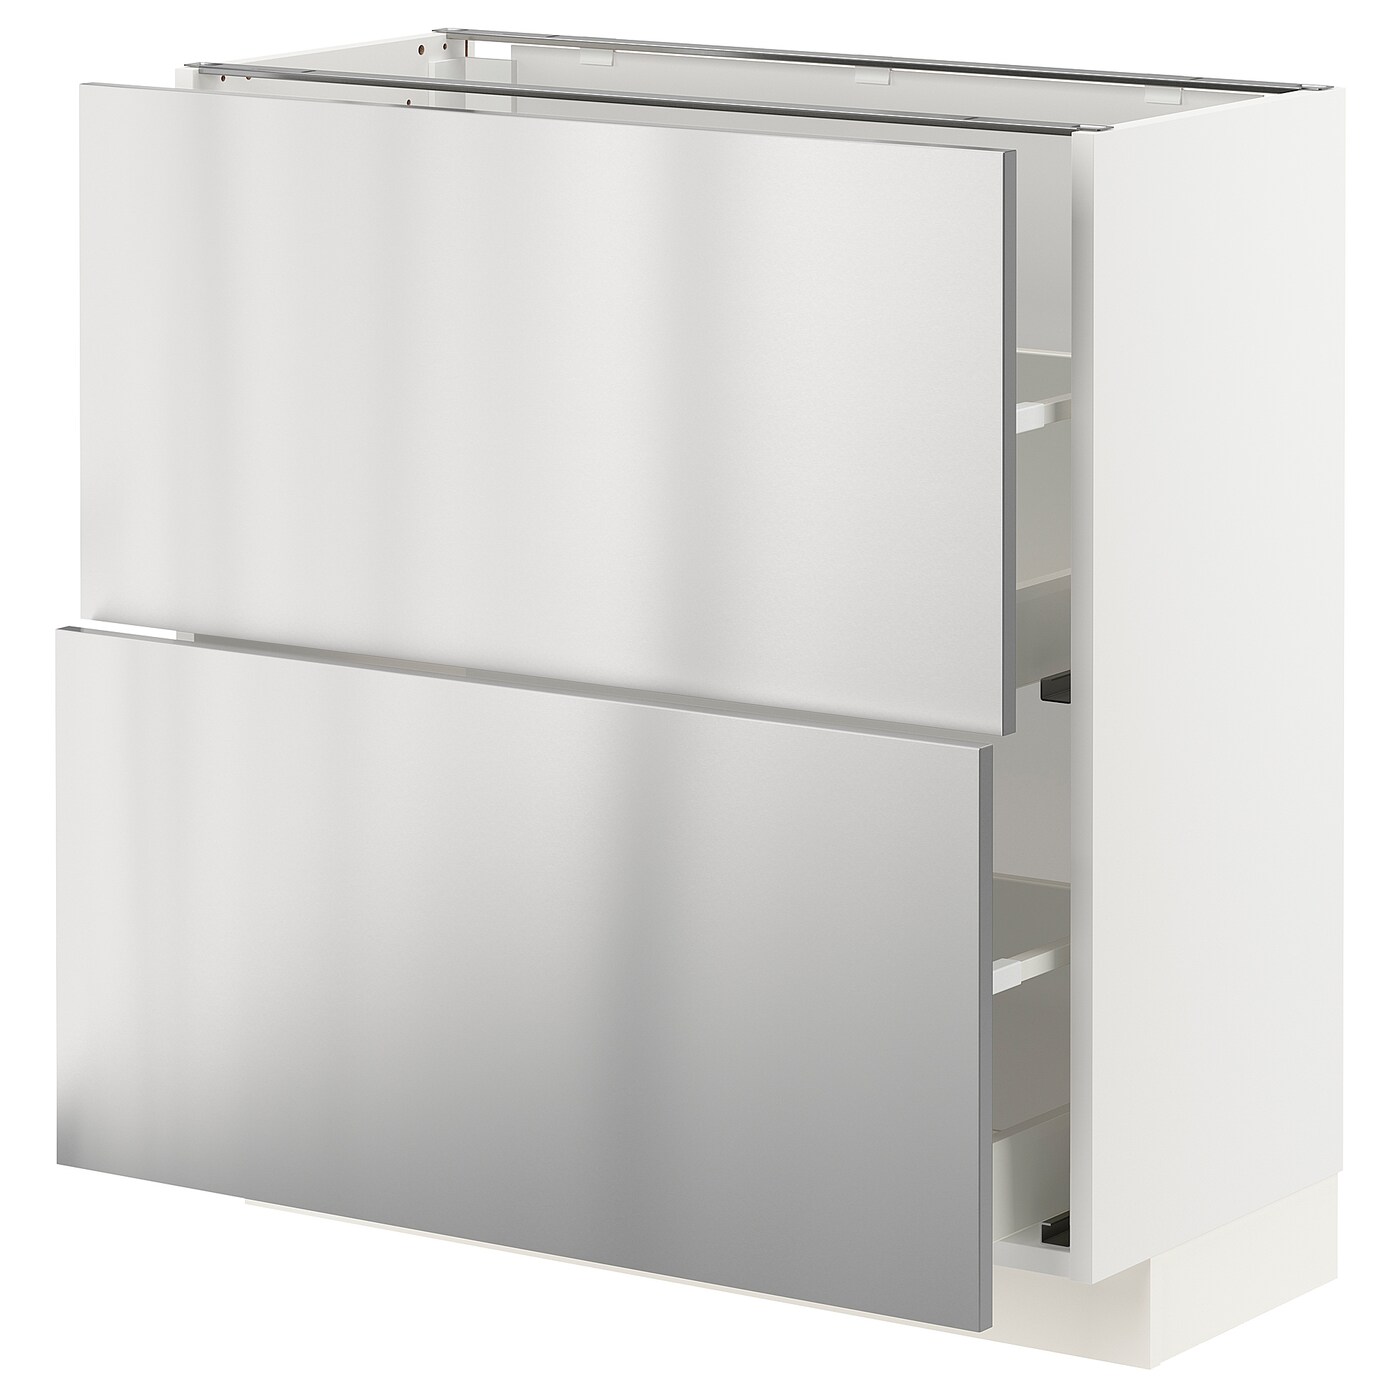 Напольный кухонный шкаф  - IKEA METOD MAXIMERA, 88x39x80см, белый/светло-серый, МЕТОД МАКСИМЕРА ИКЕА